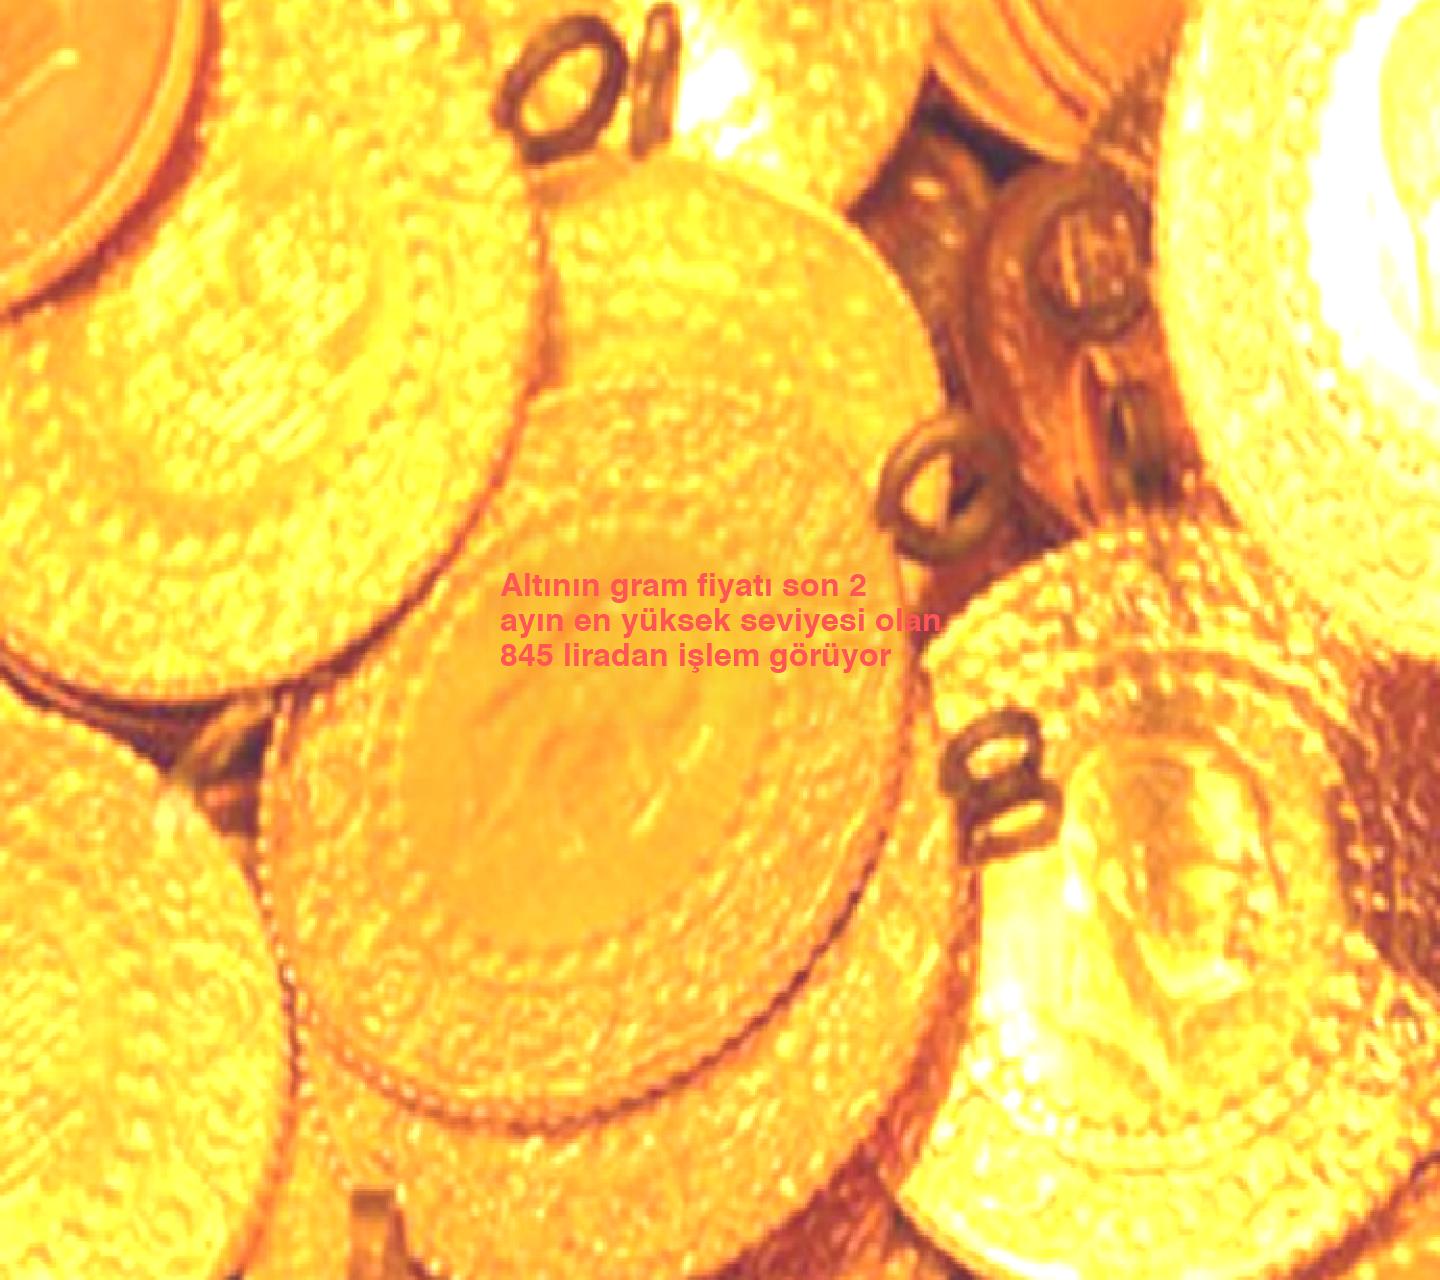 Altının gram fiyatı son 2 ayın en yüksek seviyesi olan 845 liradan işlem görüyor